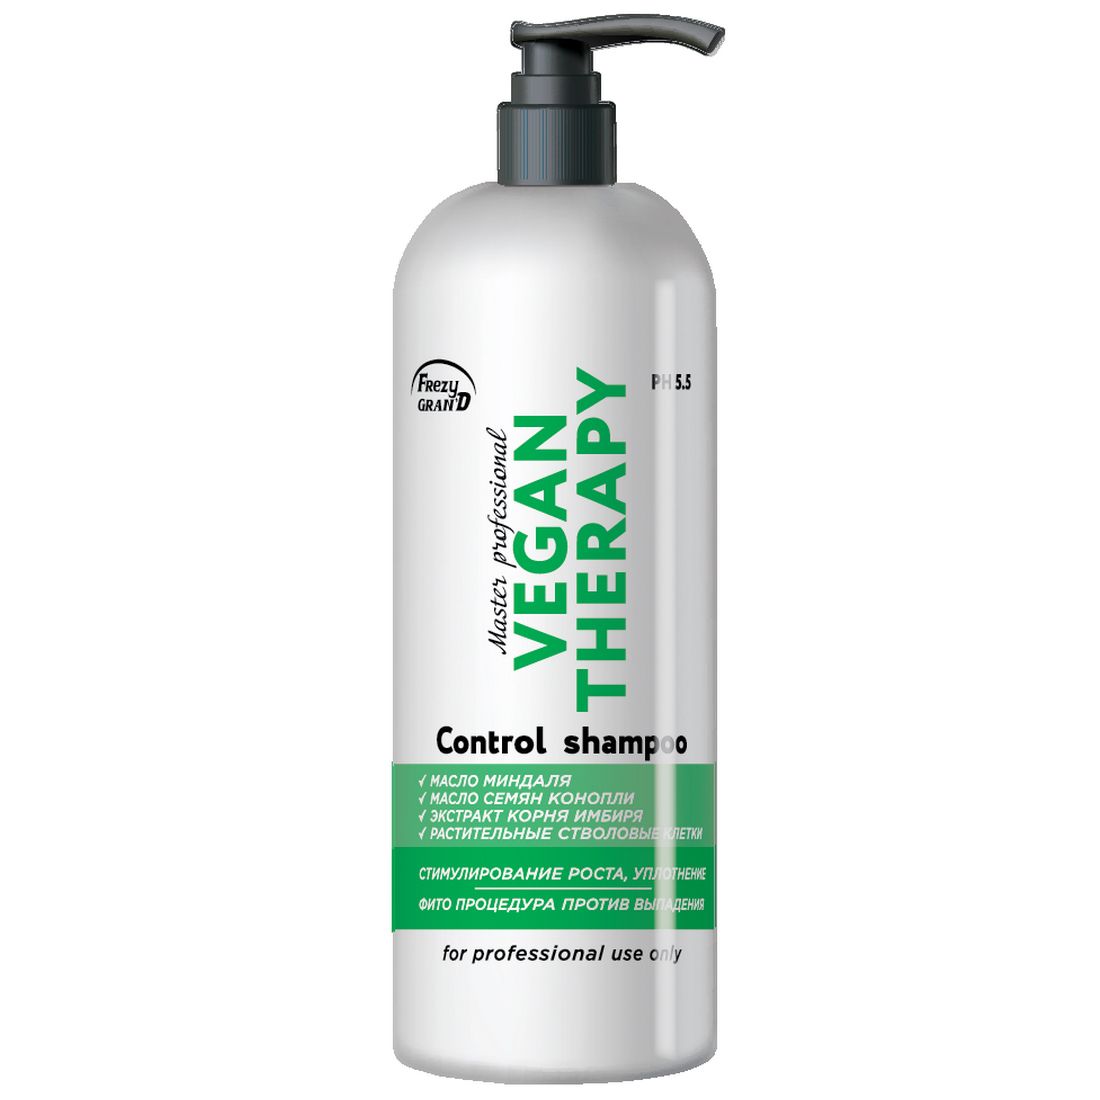 Шампунь для роста волос Frezy Gran'd Vegan Therapy PH 5.5, 1 л charles worthington шампунь для активации роста волос с защитой от ломкости